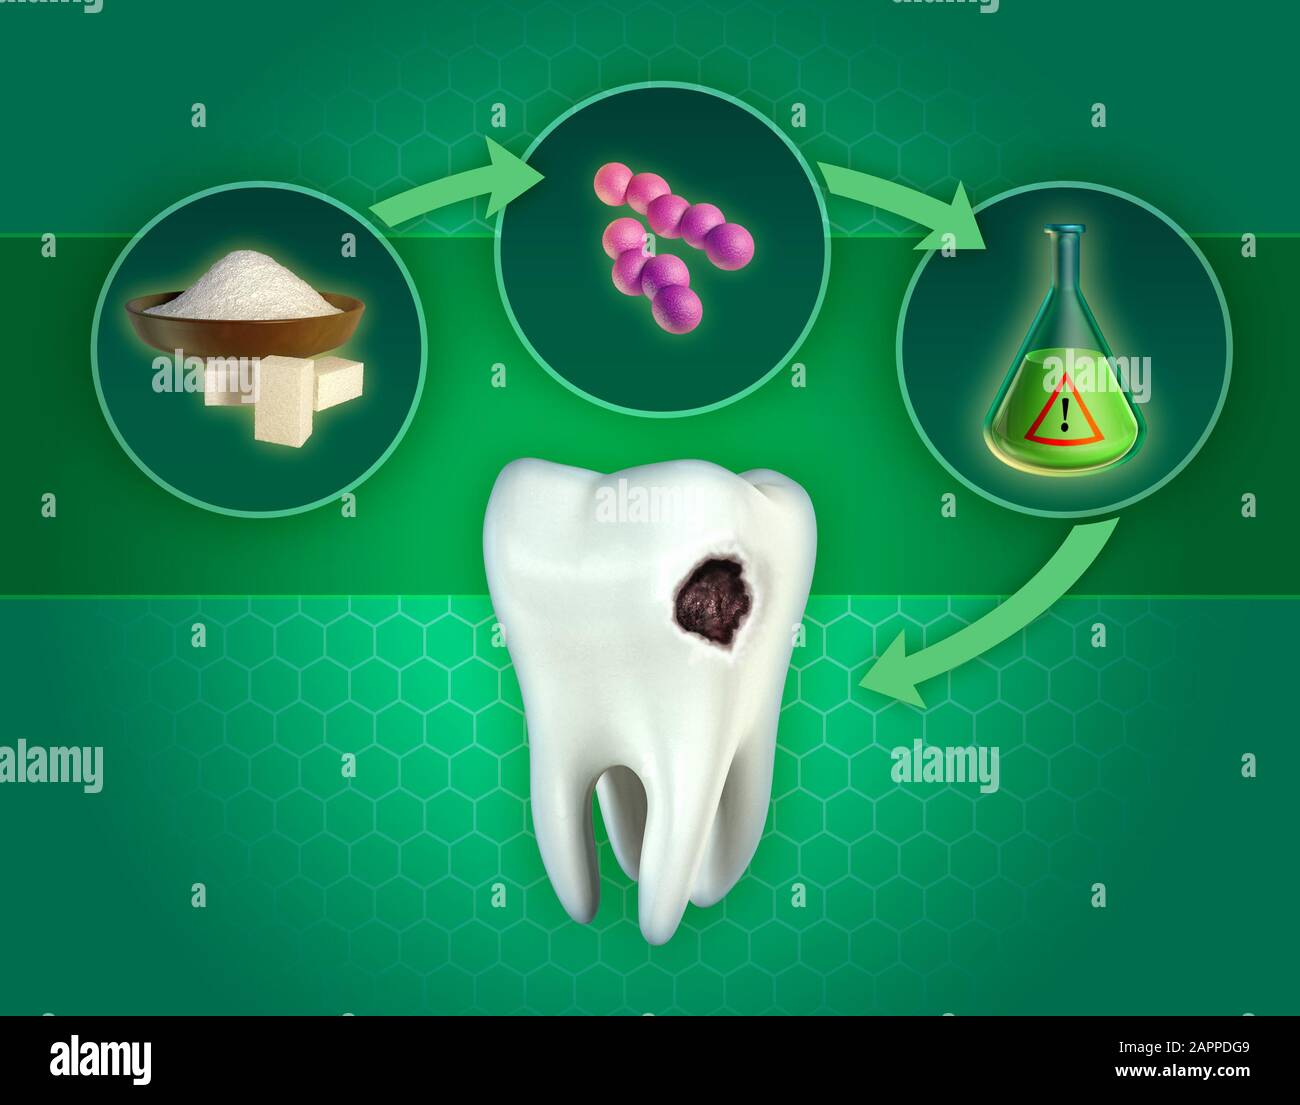 Le processus menant à la formation de cavités dentaires, causée par la production d'acides par des bactéries consommatrices de sucre. Illustration tridimensionnelle. Banque D'Images